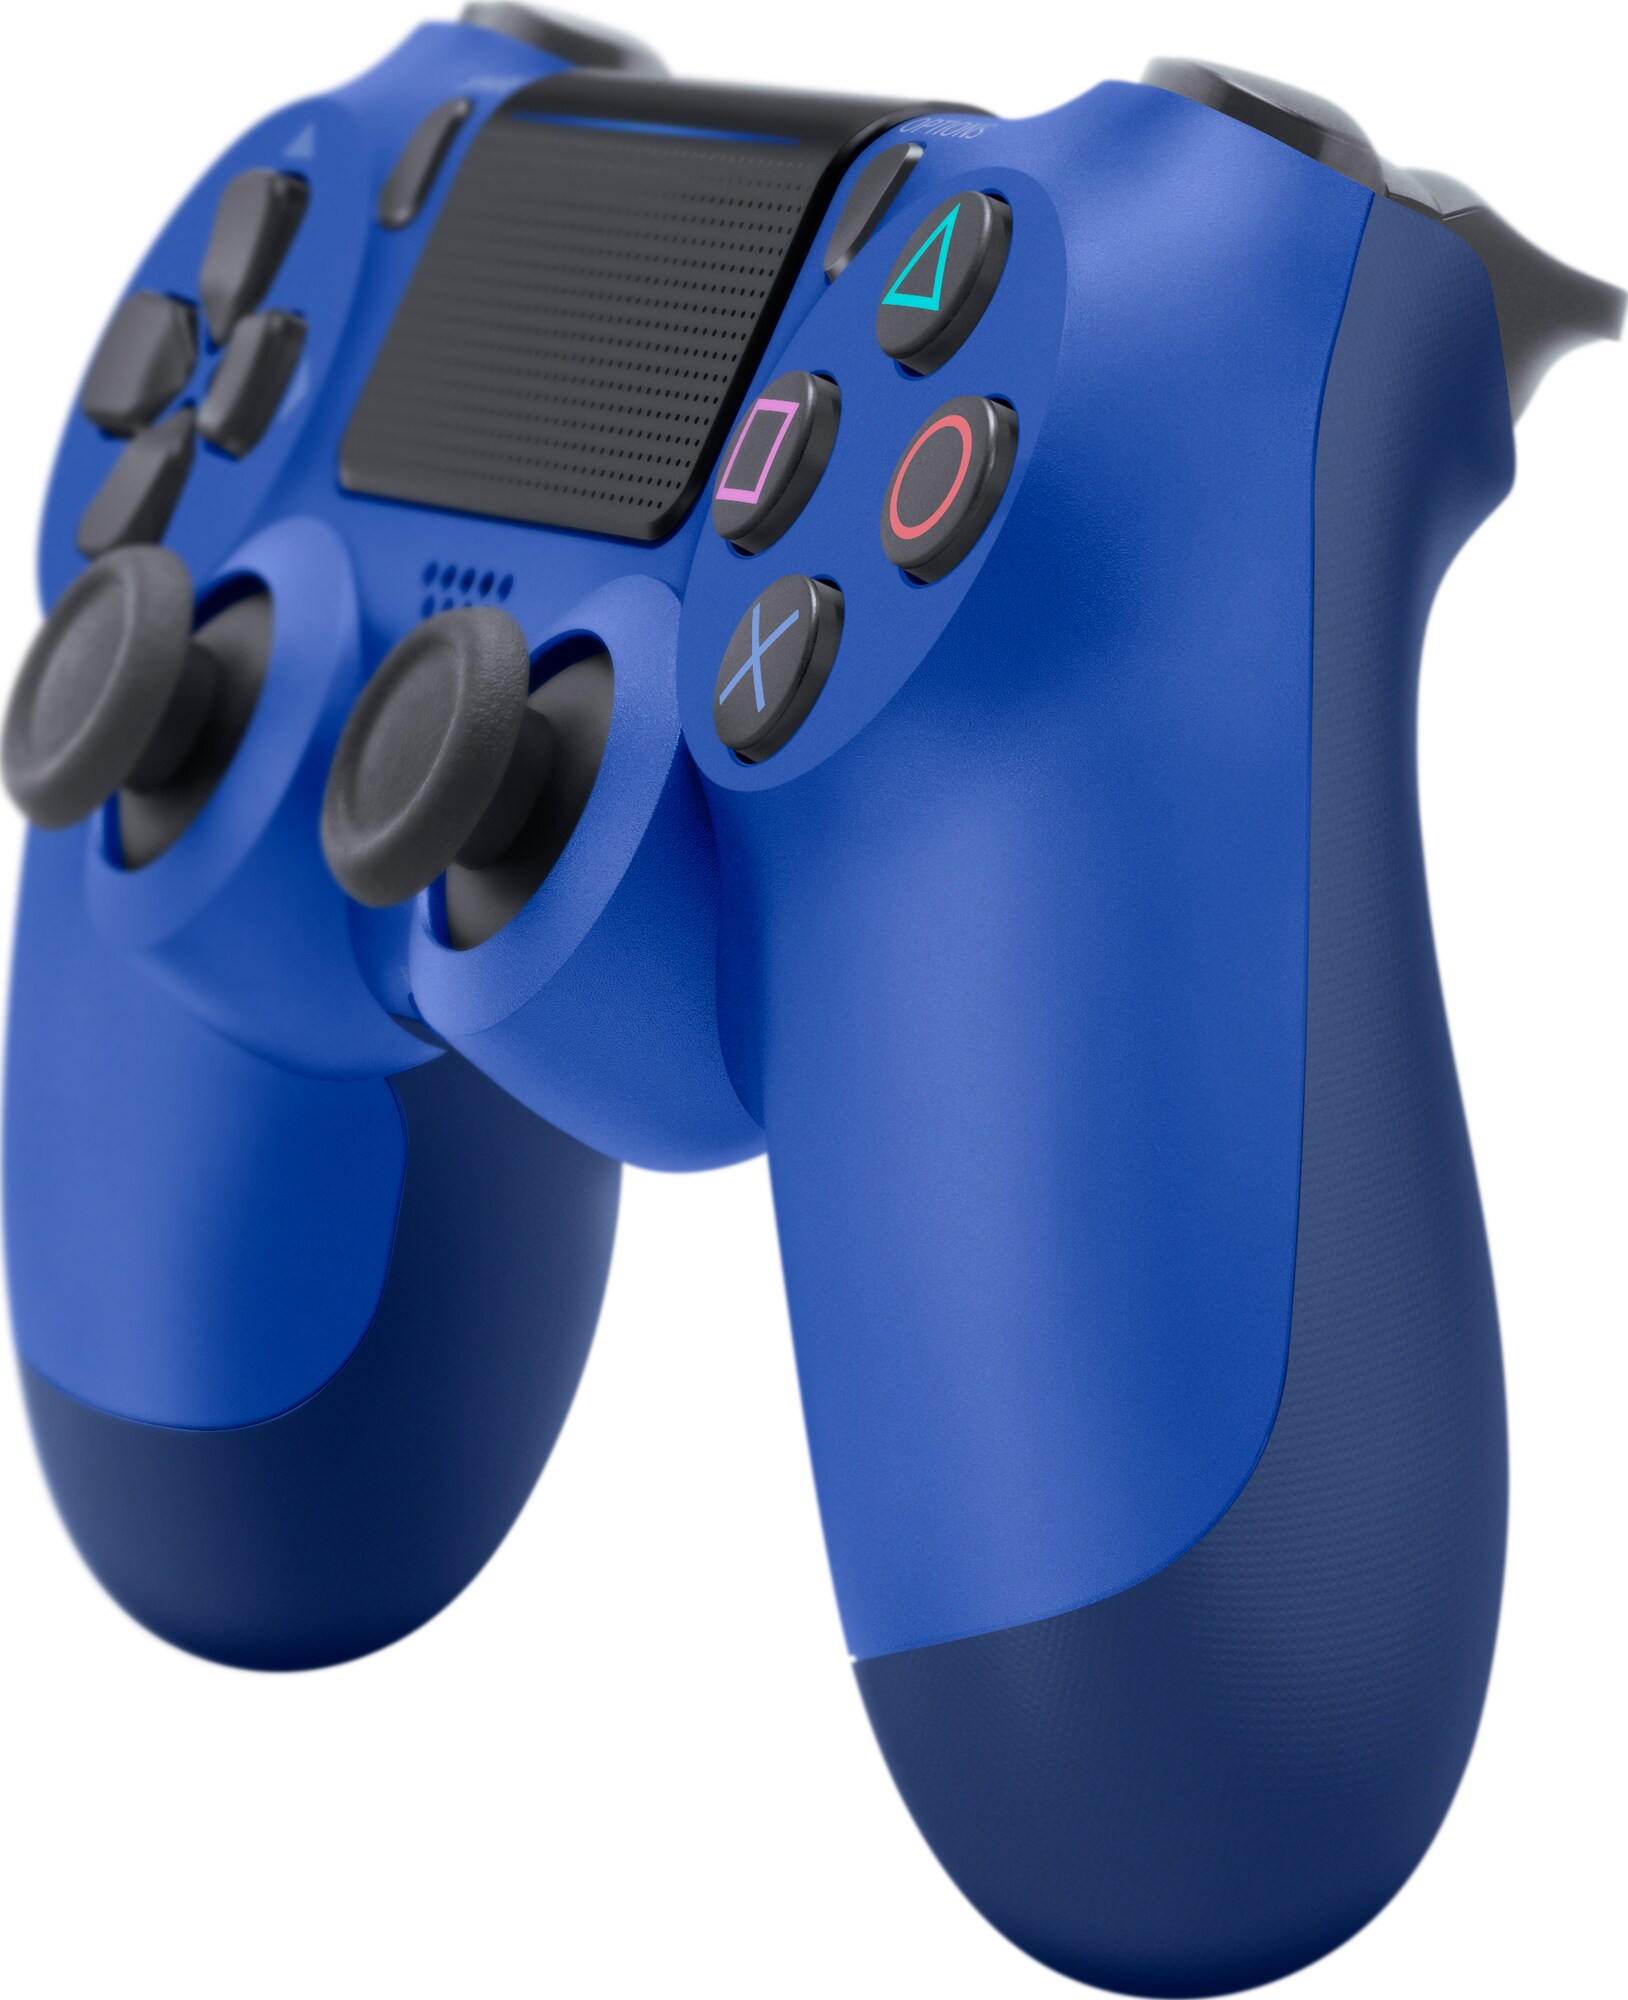 DualShock 4 trådløs controller til PS4 (blå) - PlayStation 4 - PS4 tilbehør  - Elgiganten